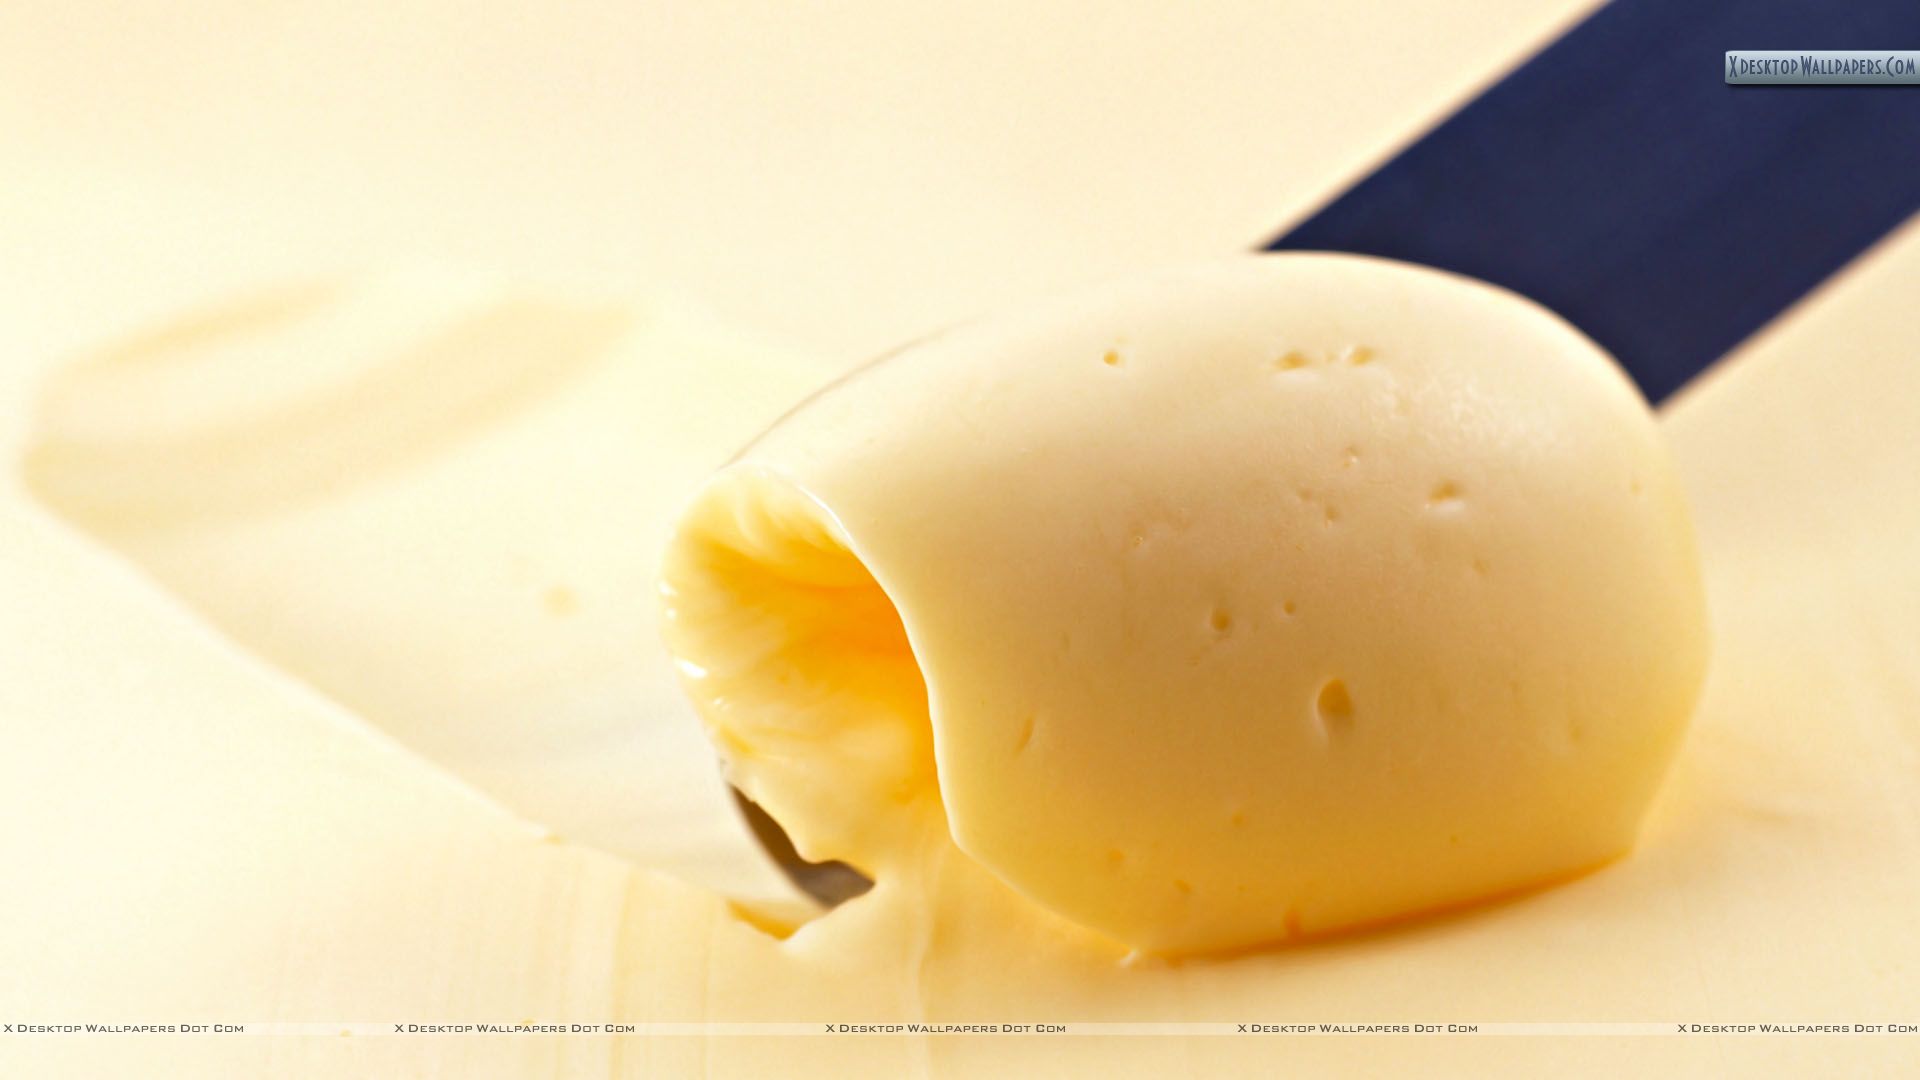 Butter Wallpaper - Bing images